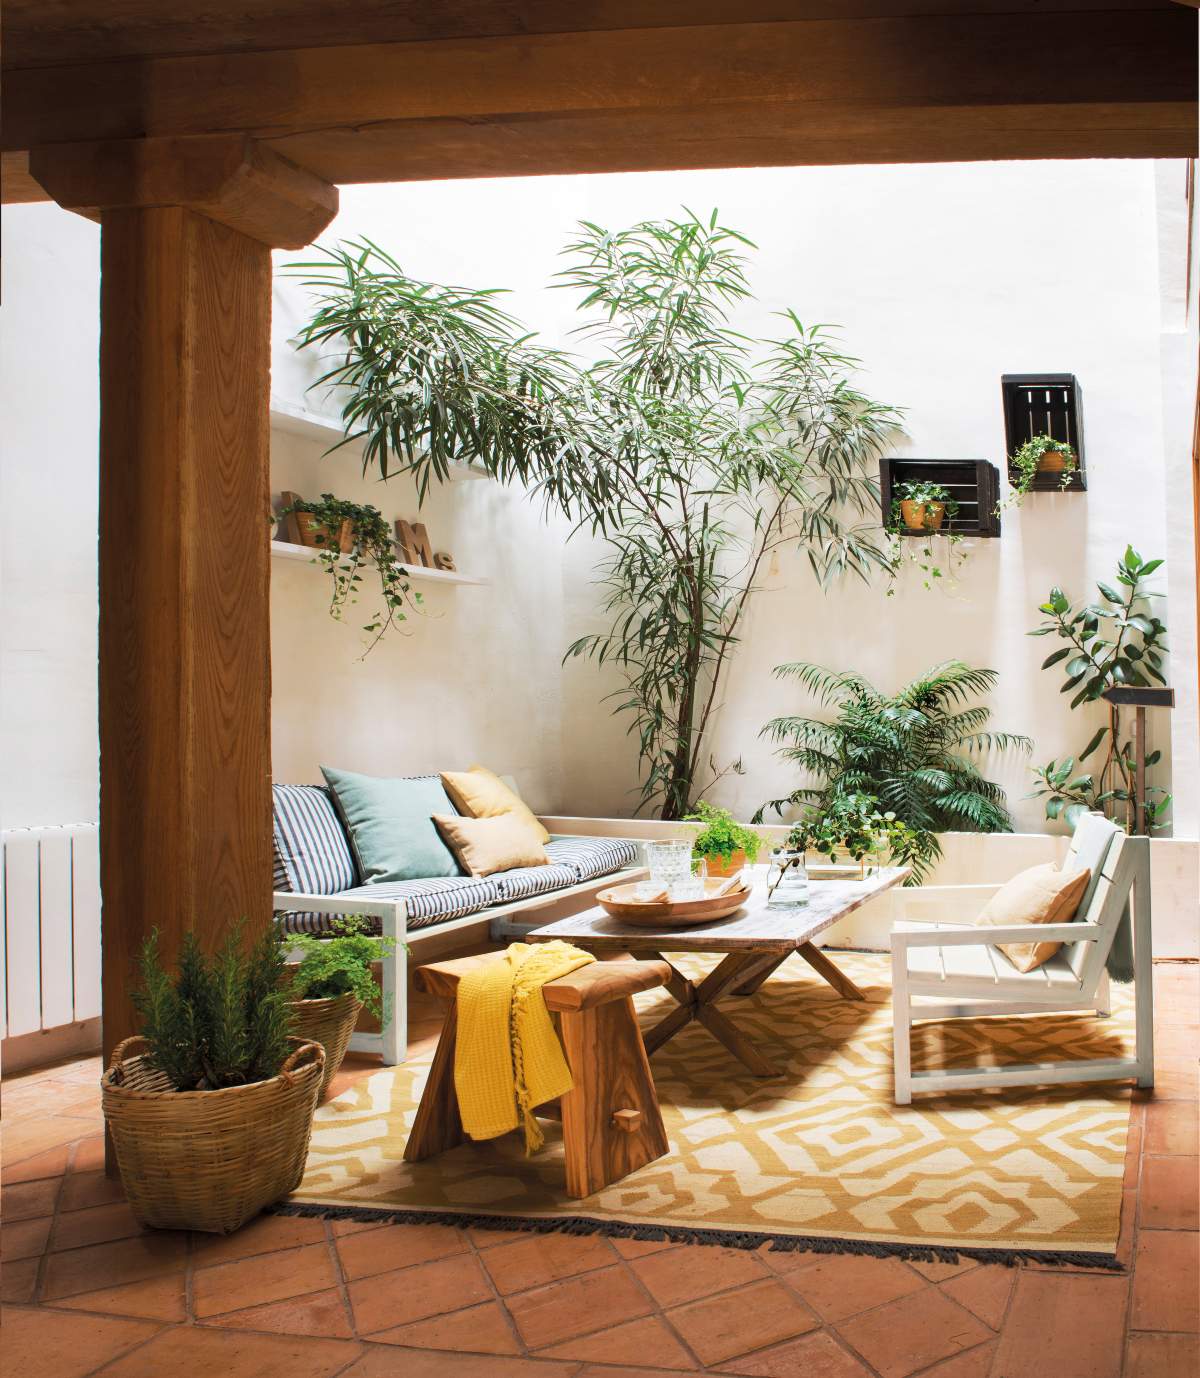 Un patio con plantas de exterior en macetas y sobre estantes.